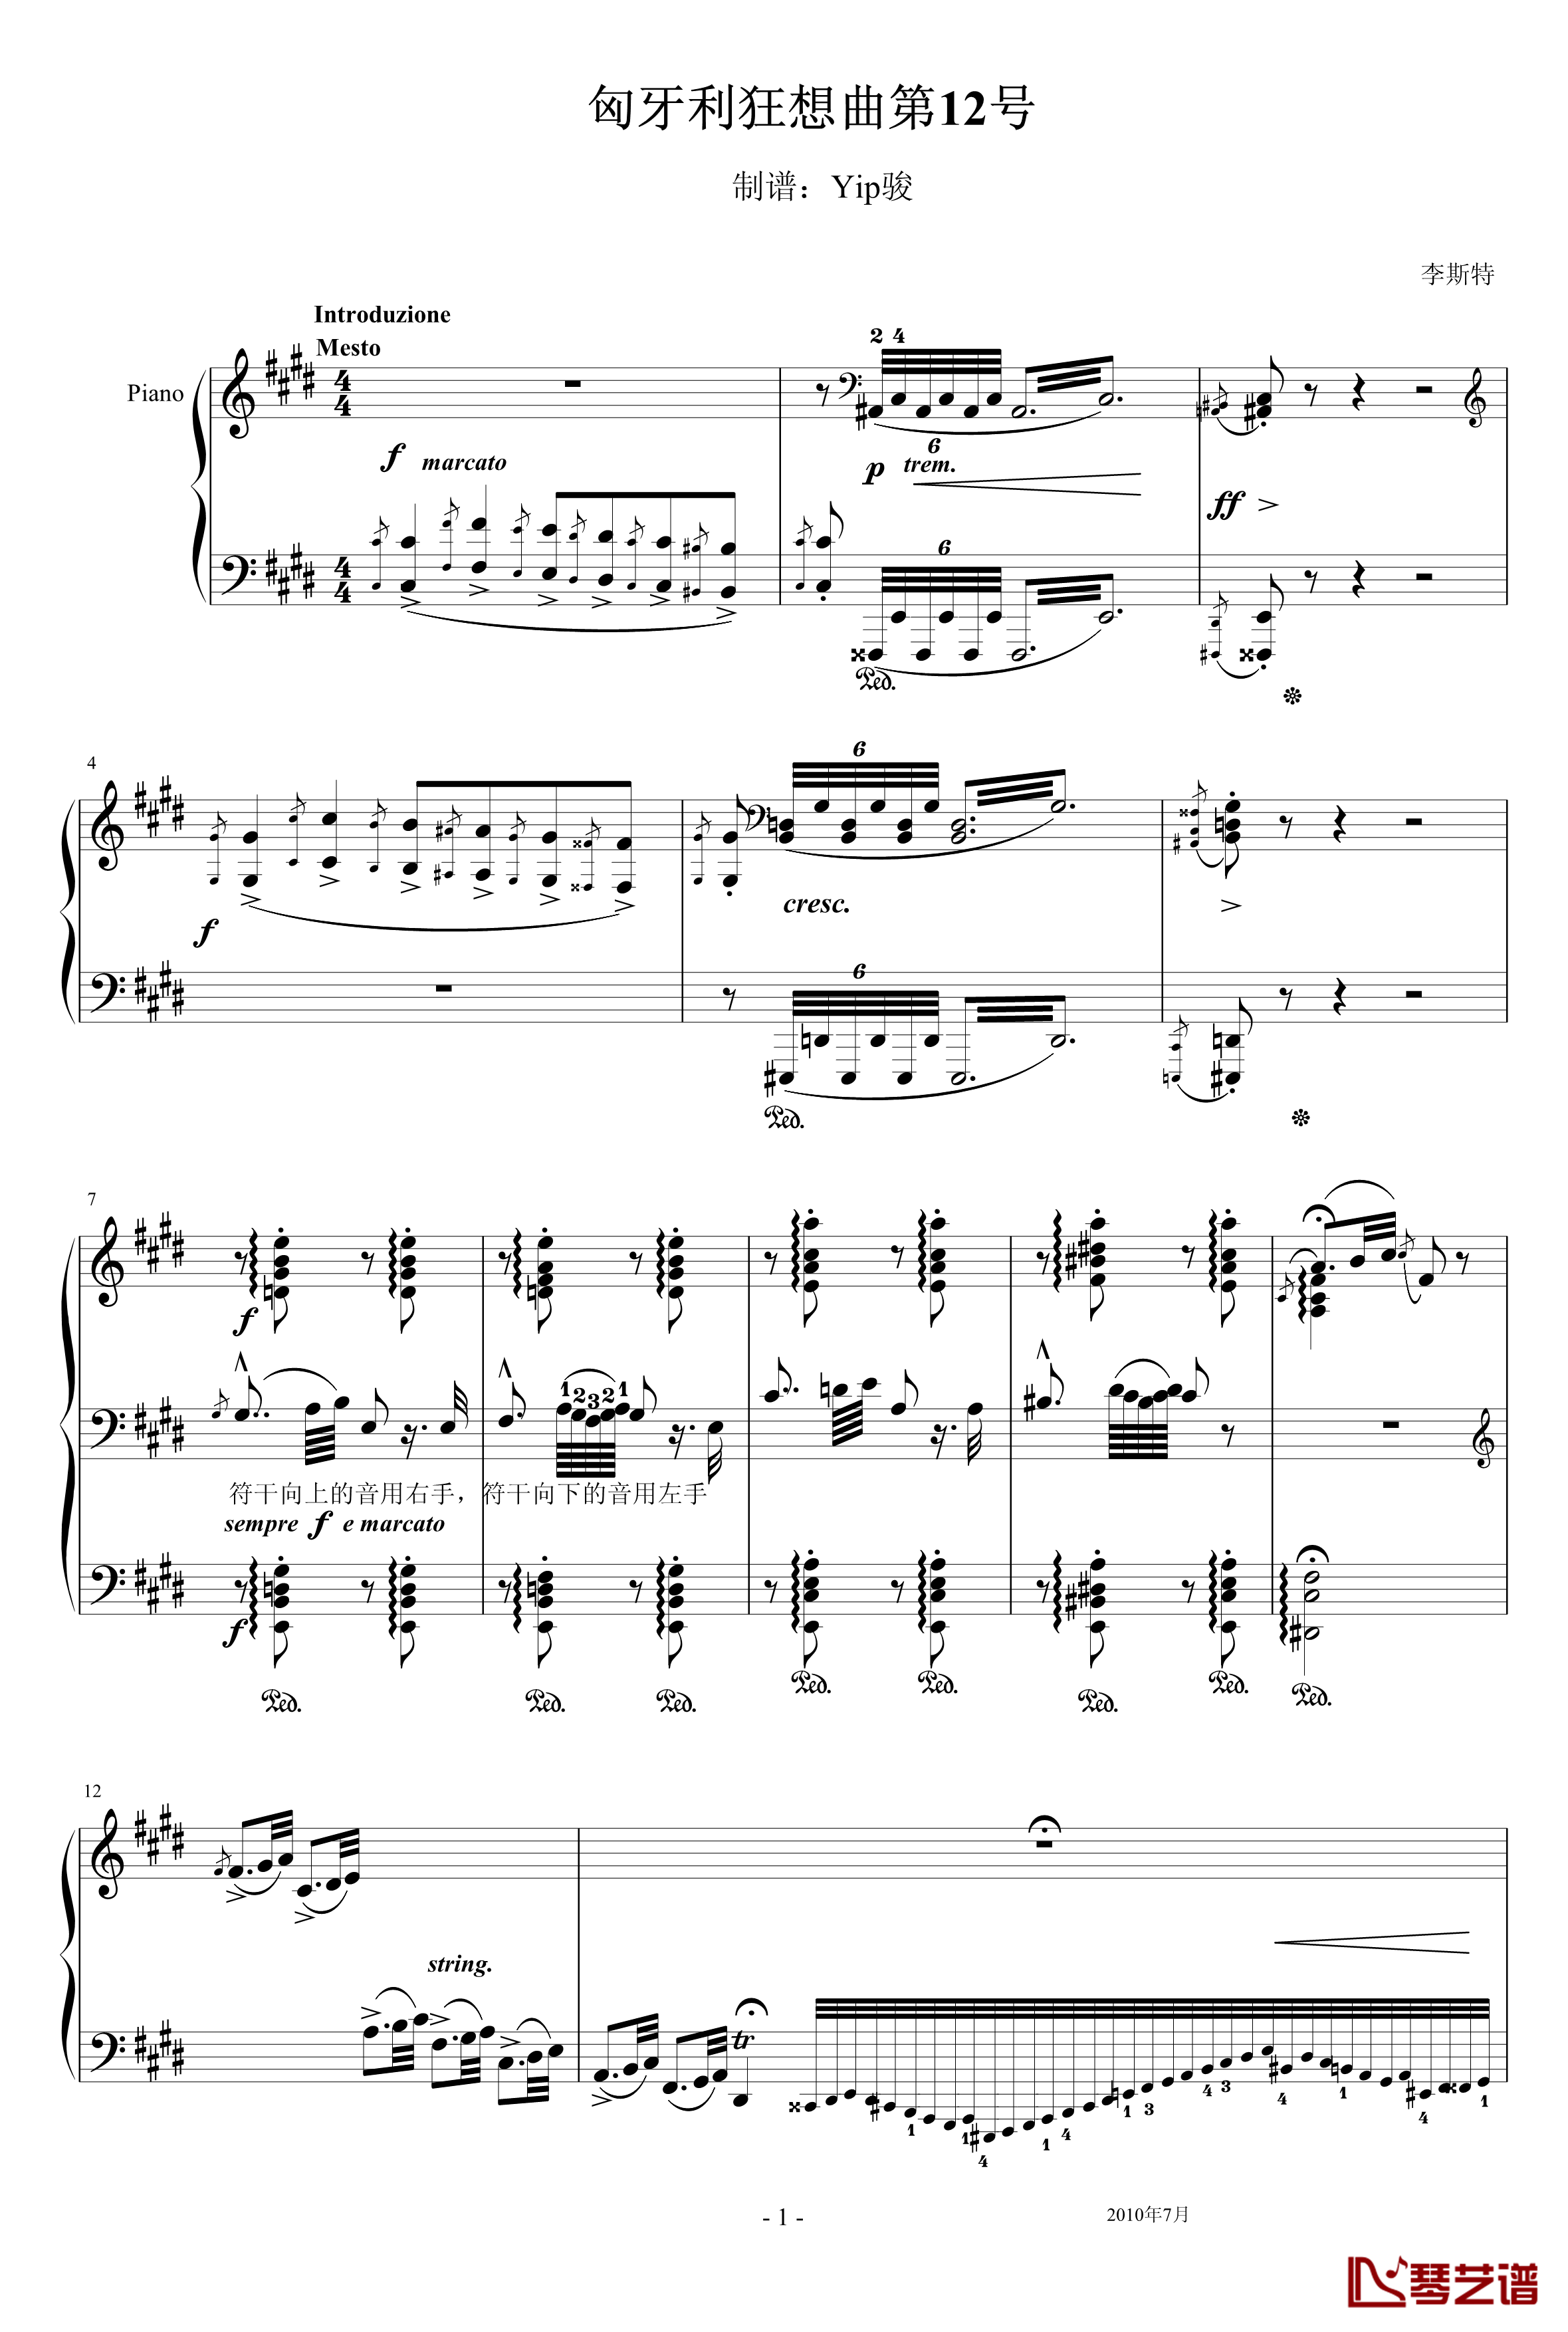 匈牙利狂想曲12号钢琴谱-著名的匈狂-李斯特1